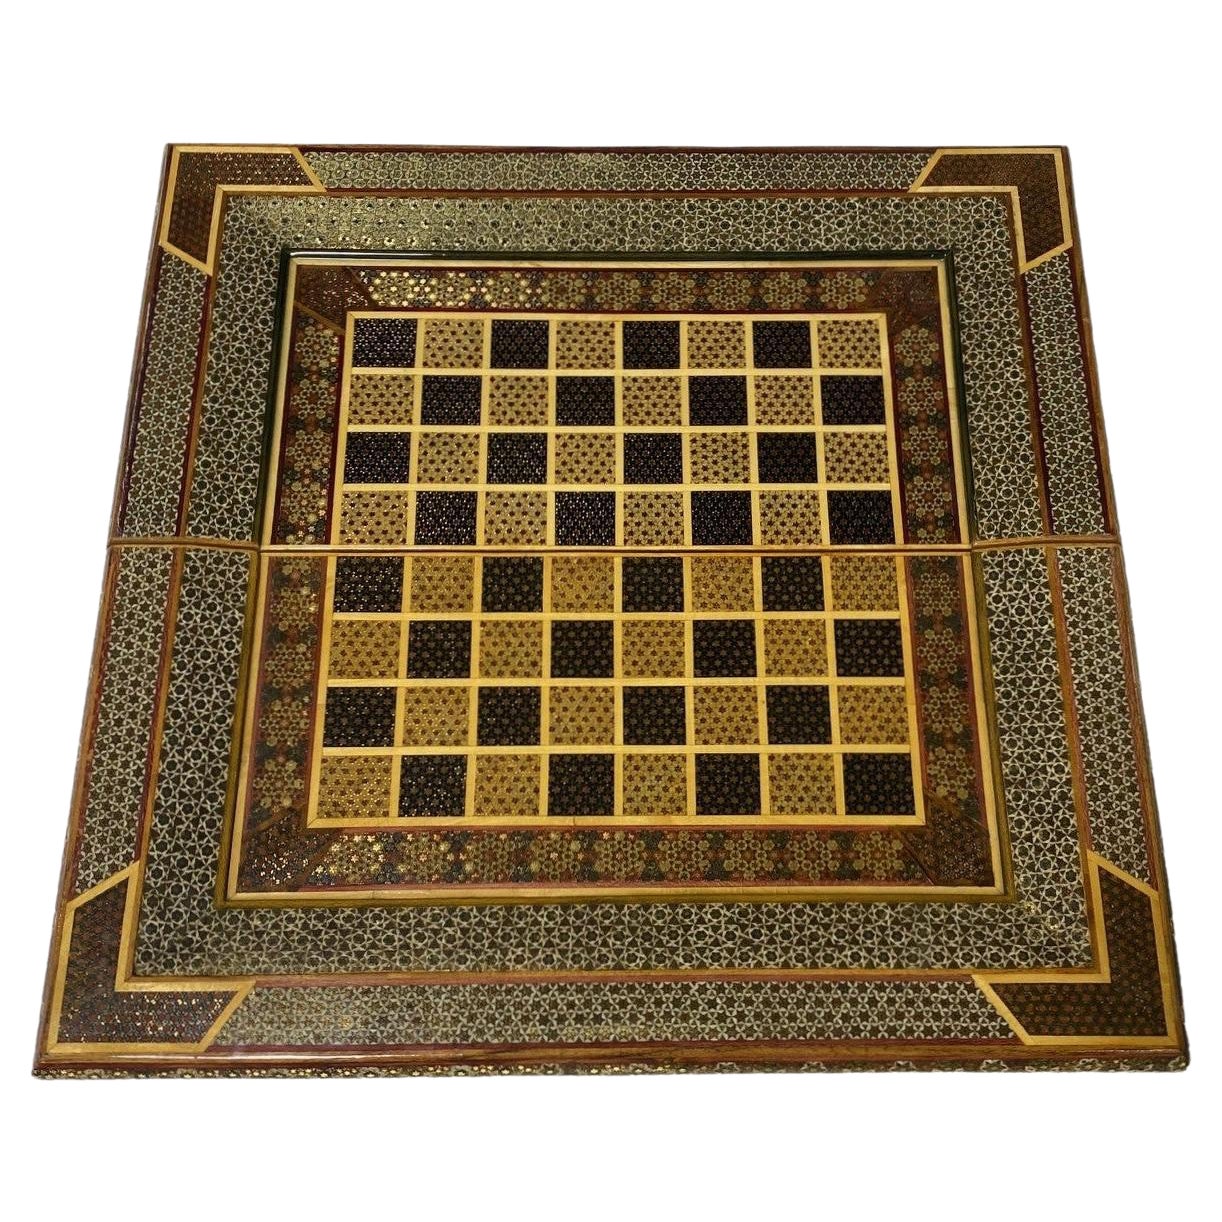 Tableau de backgammon et d'échecs marocain mauresque du Moyen-Orient marqueté de micro-mosaïque